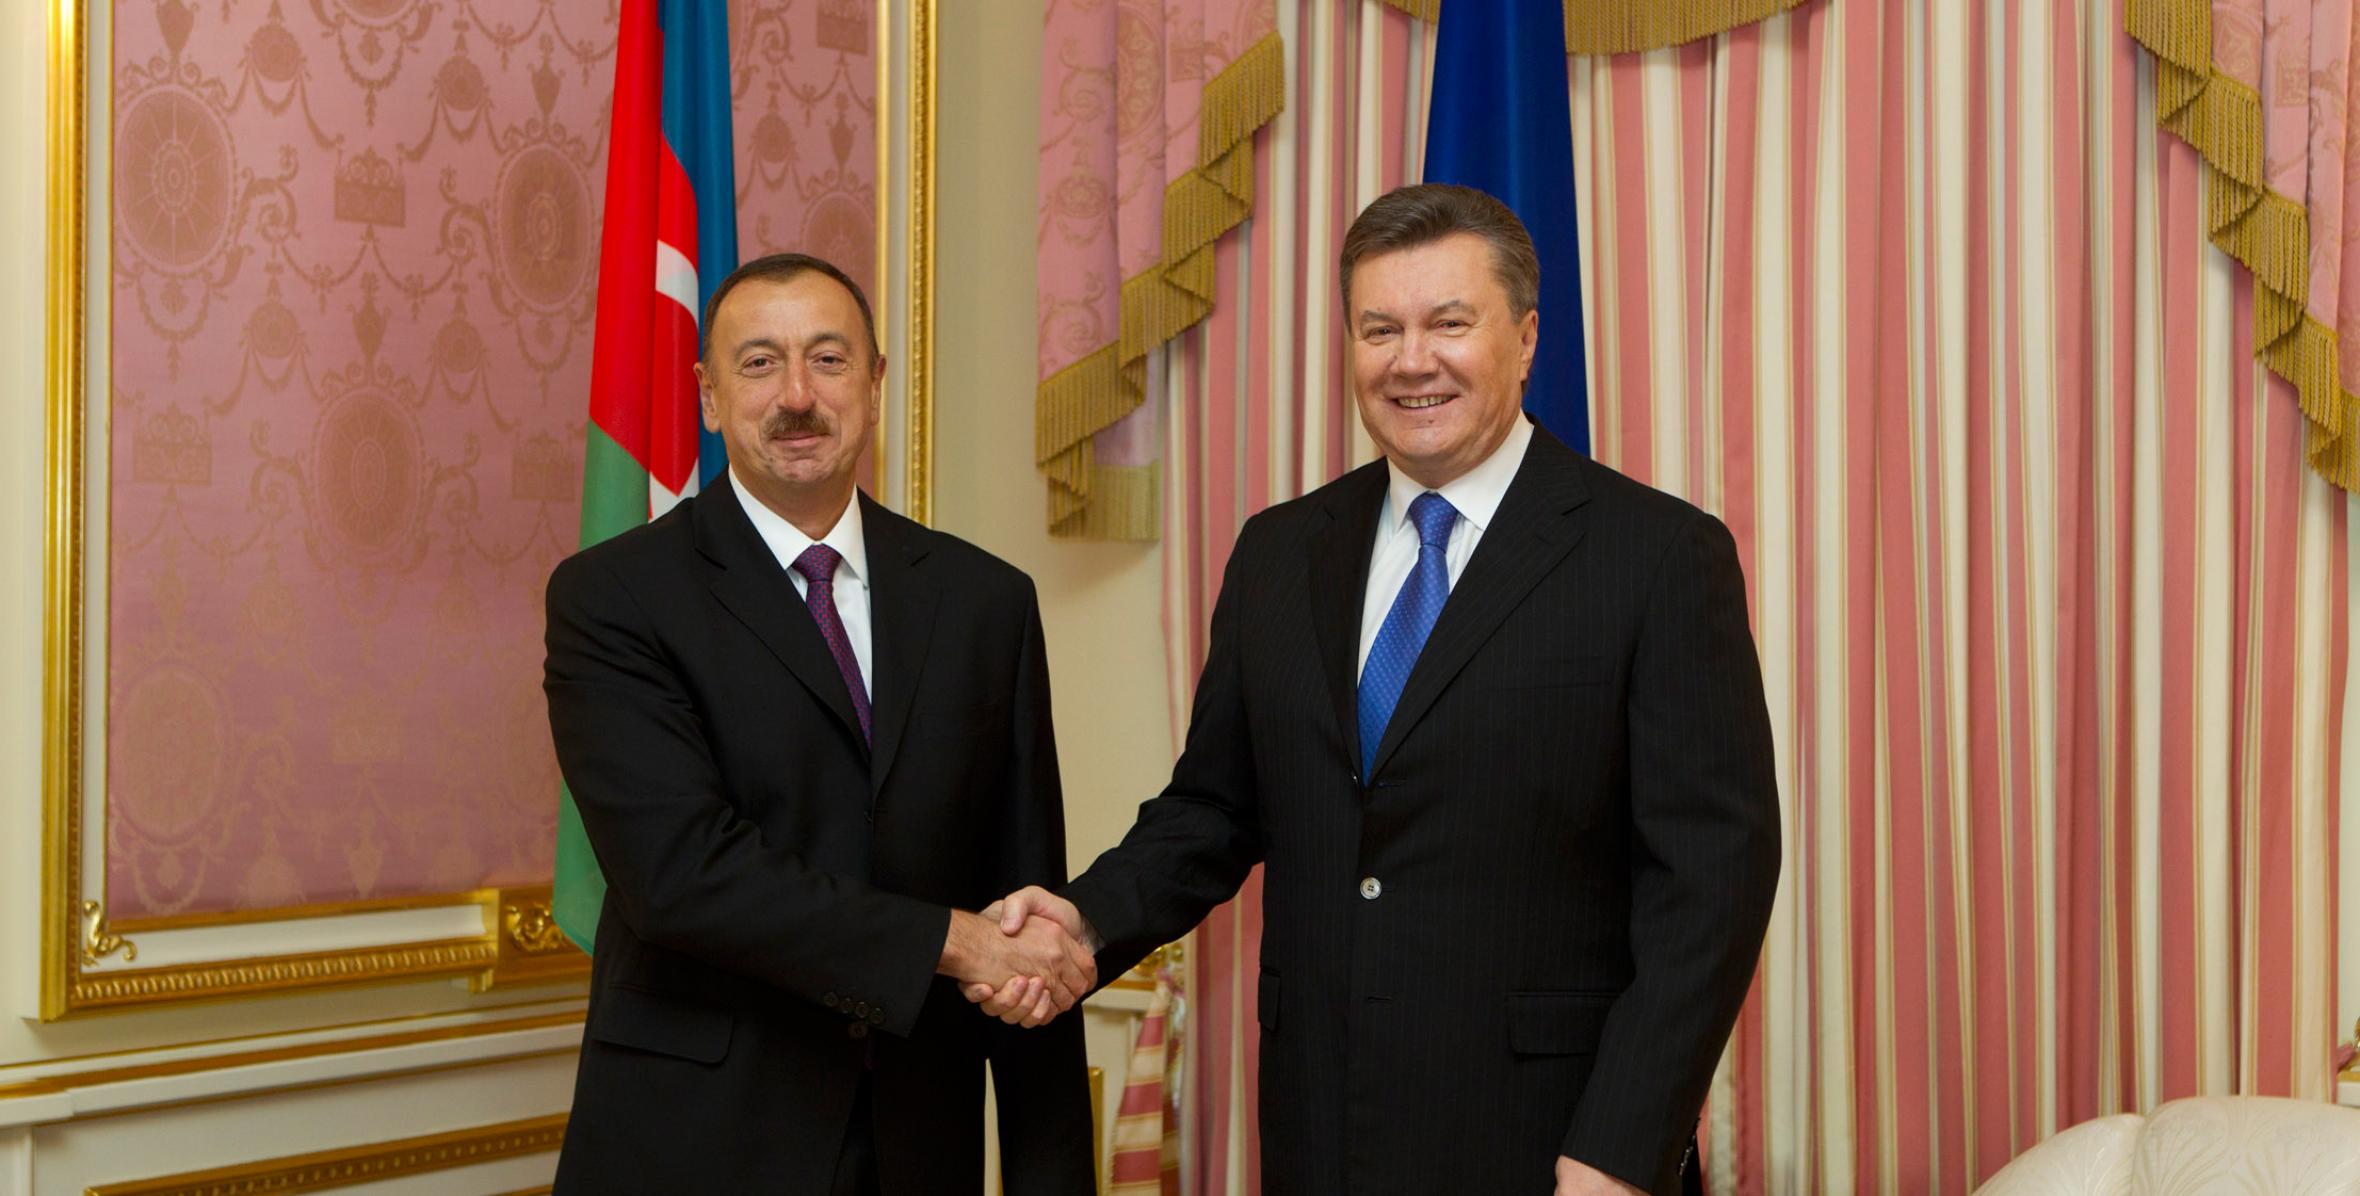 Состоялась встреча Ильхама Алиева и Президента Украины Виктора Януковича один на один